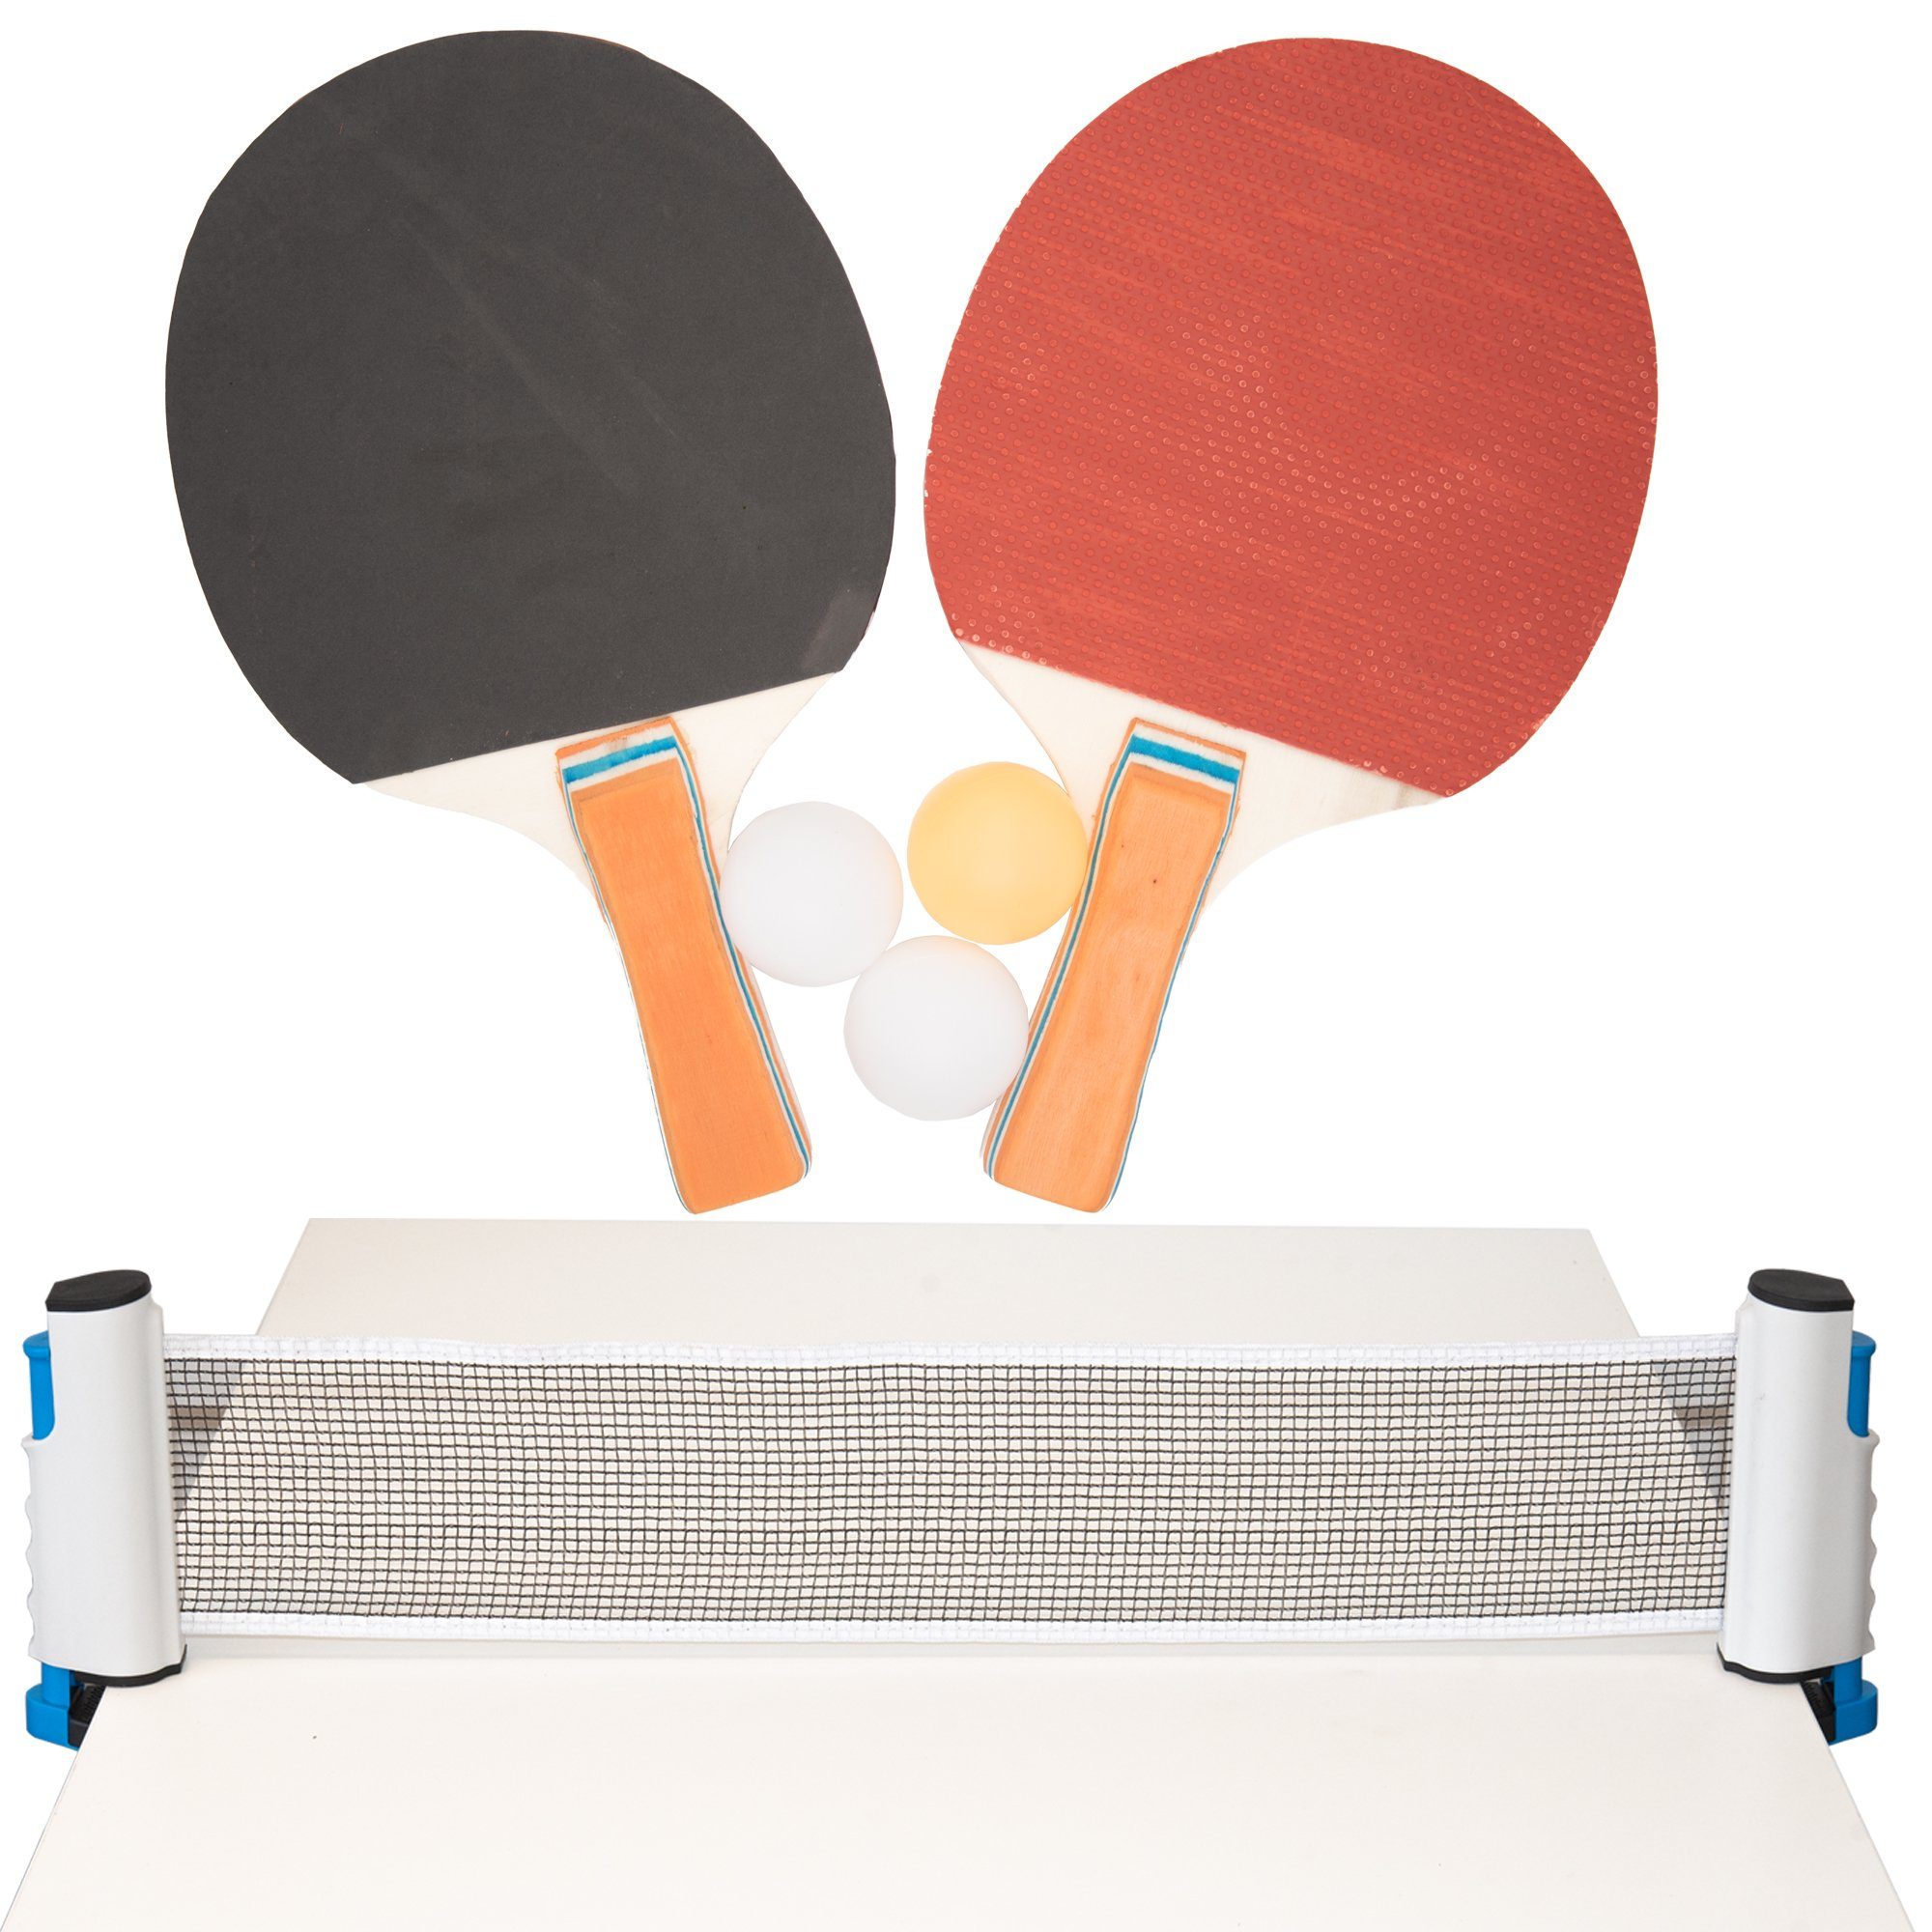 Set Tischtennisschläger, 6tlg, Tischtennisset, Tischtennisbälle, Tischtennisnetz + Tischtennisschläger conkor